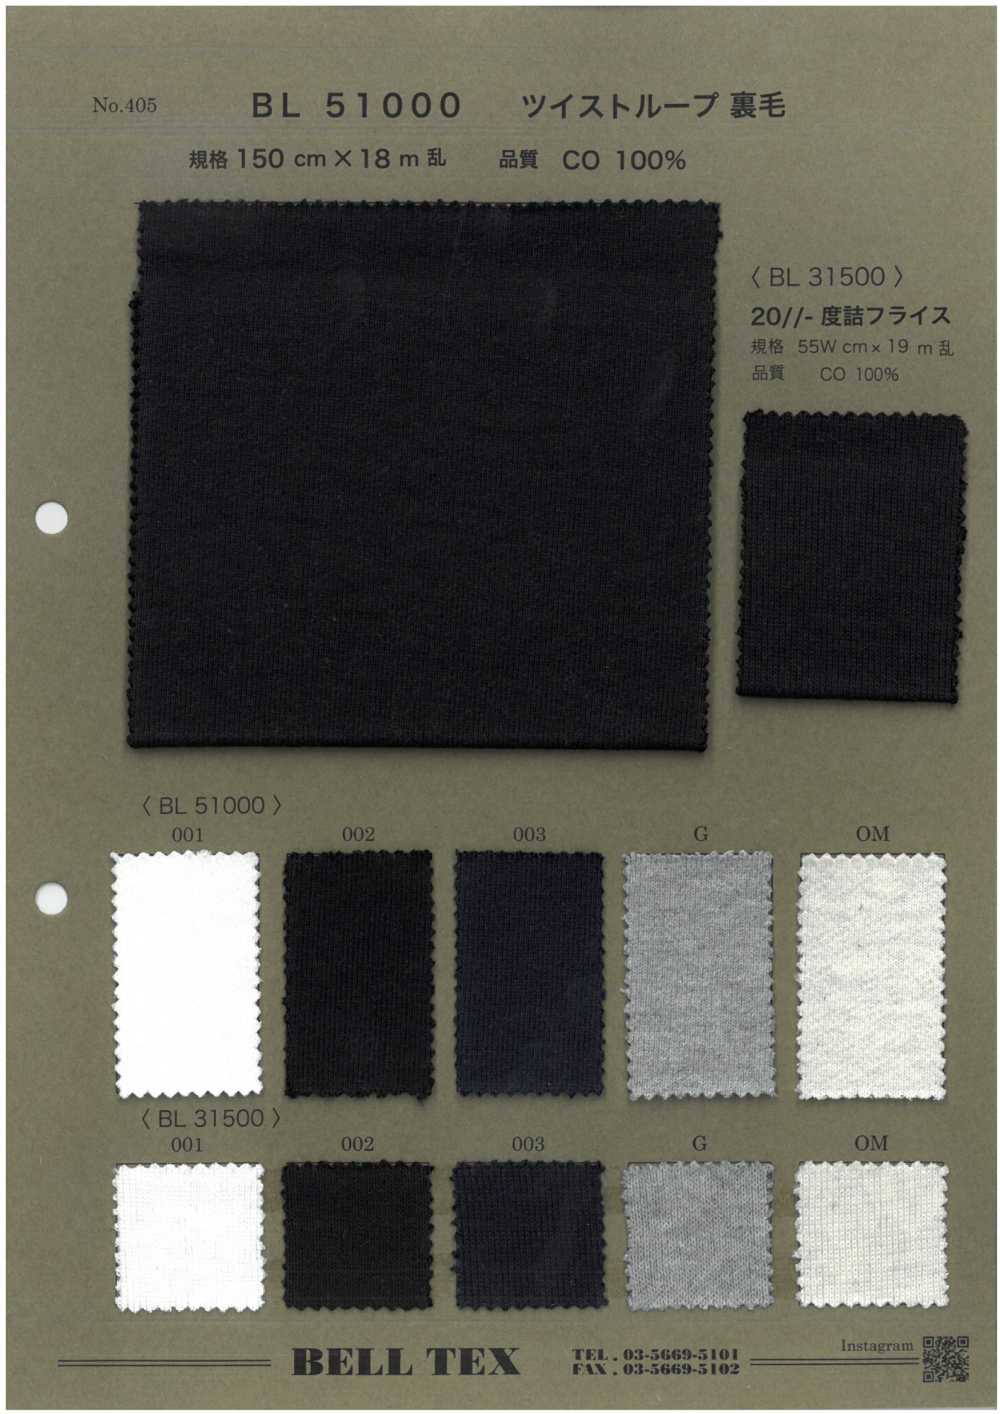 BL51000 [Fabrica Textil] Vértice